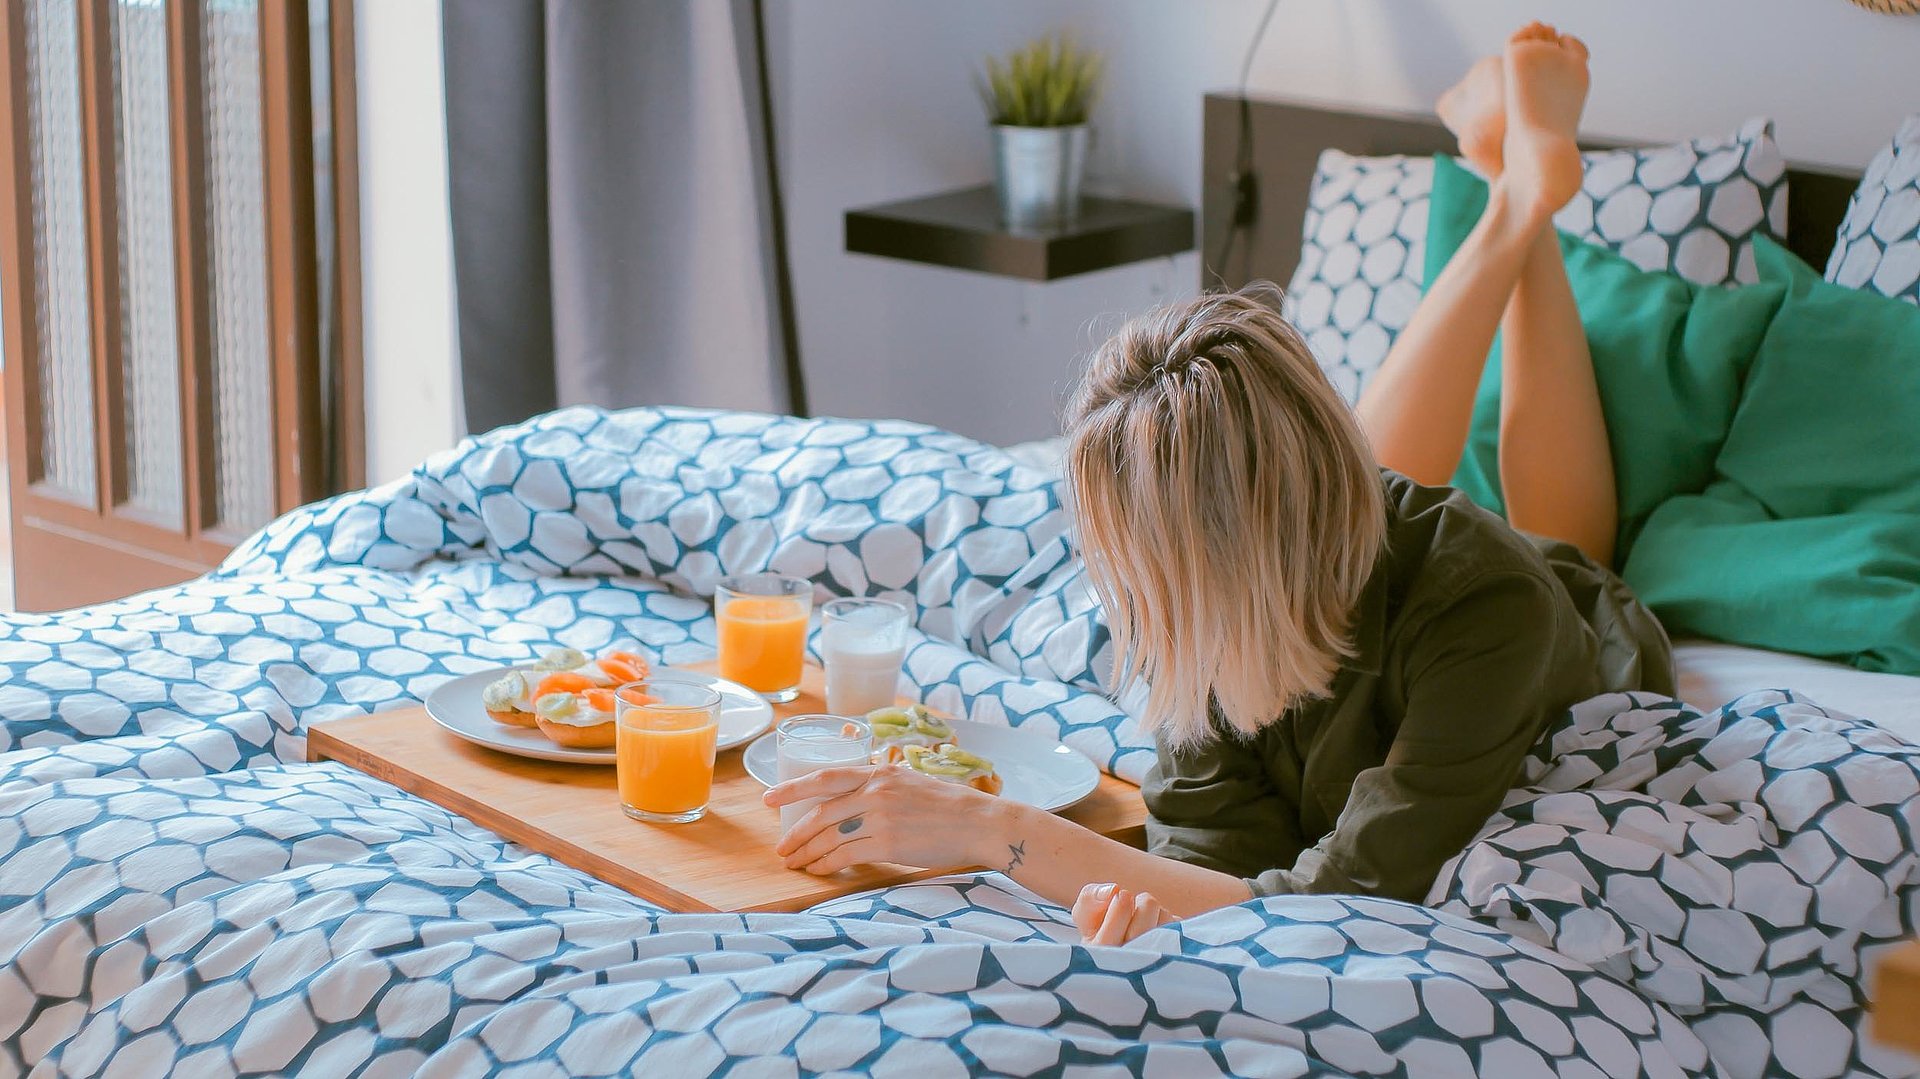 Hotels in Nürnberg - junge Frau liegt auf dem Bett neben einer vollen Frühstücksplatte, mit O-Saft, belegten Brötchen und Milch